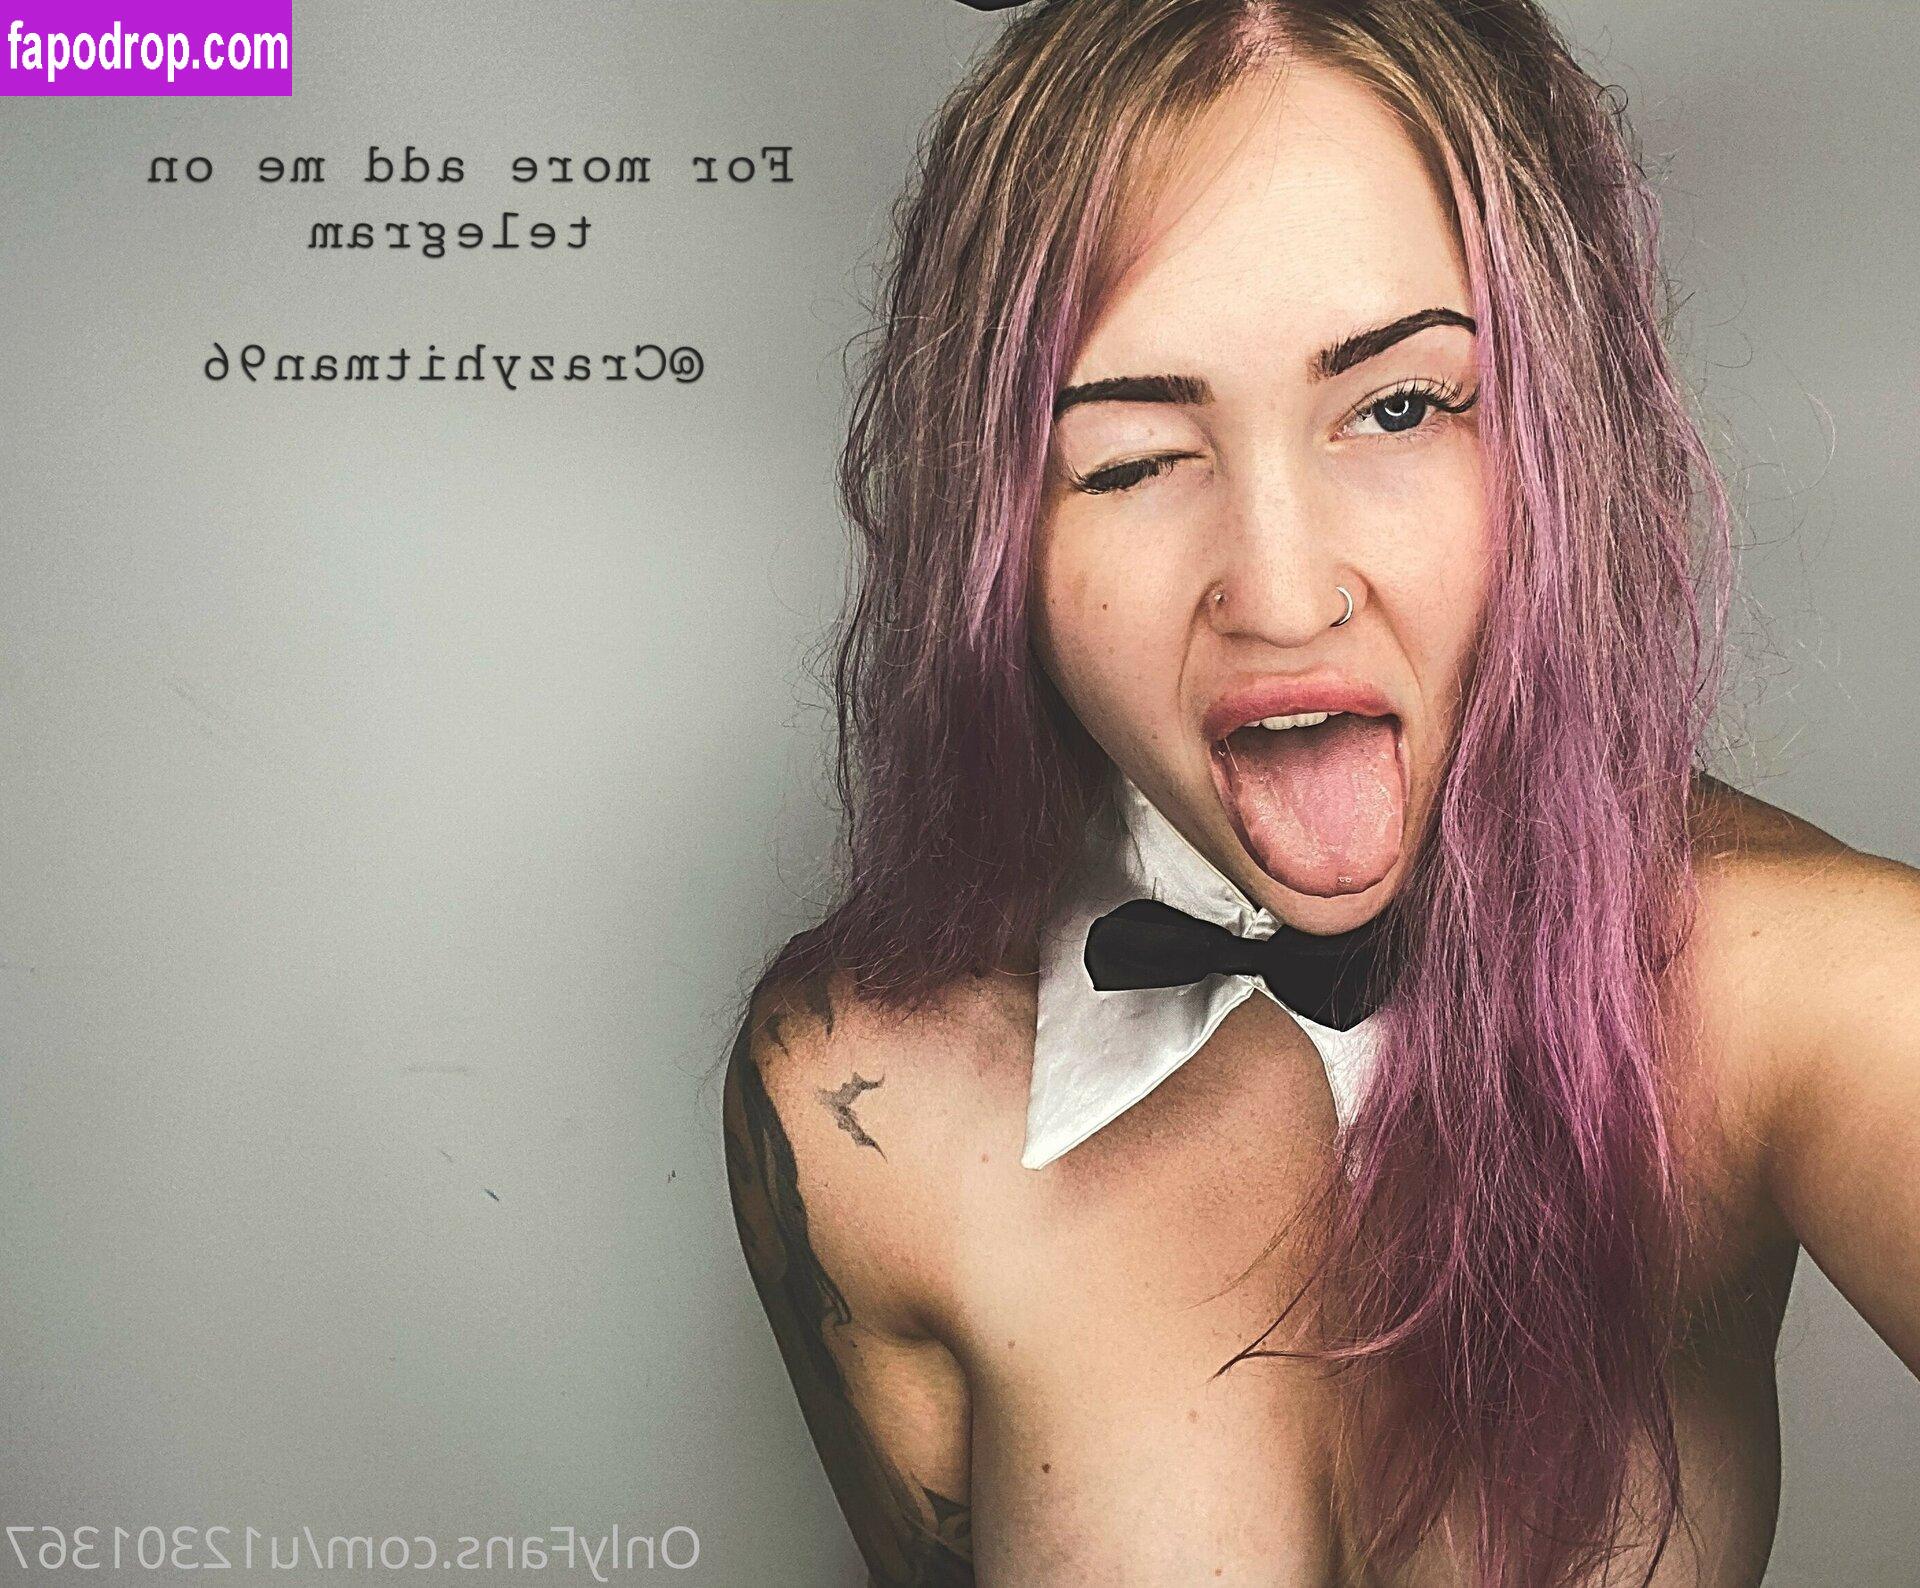 Karlee Sabrina / karleesabrina / sabrinavtatt leak of nude photo #0006 from OnlyFans or Patreon